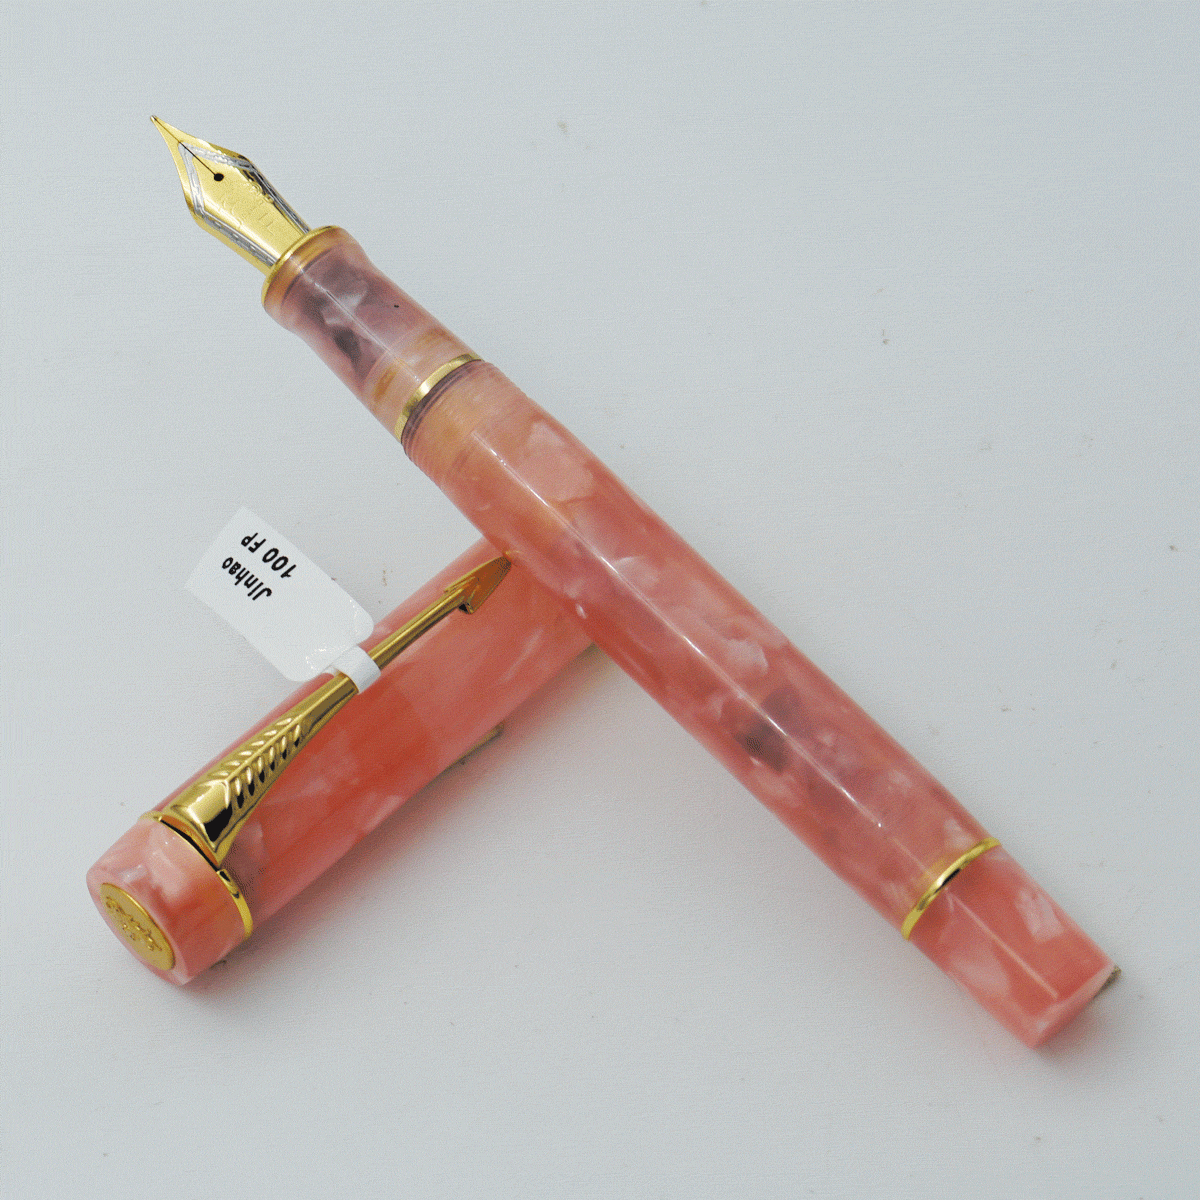 Jinhao 100 Peach Color Acrylic Marble Acrylic Body With Golden Clip No 35 Fine Nib Converter Type Fountain Pen SKU 24366